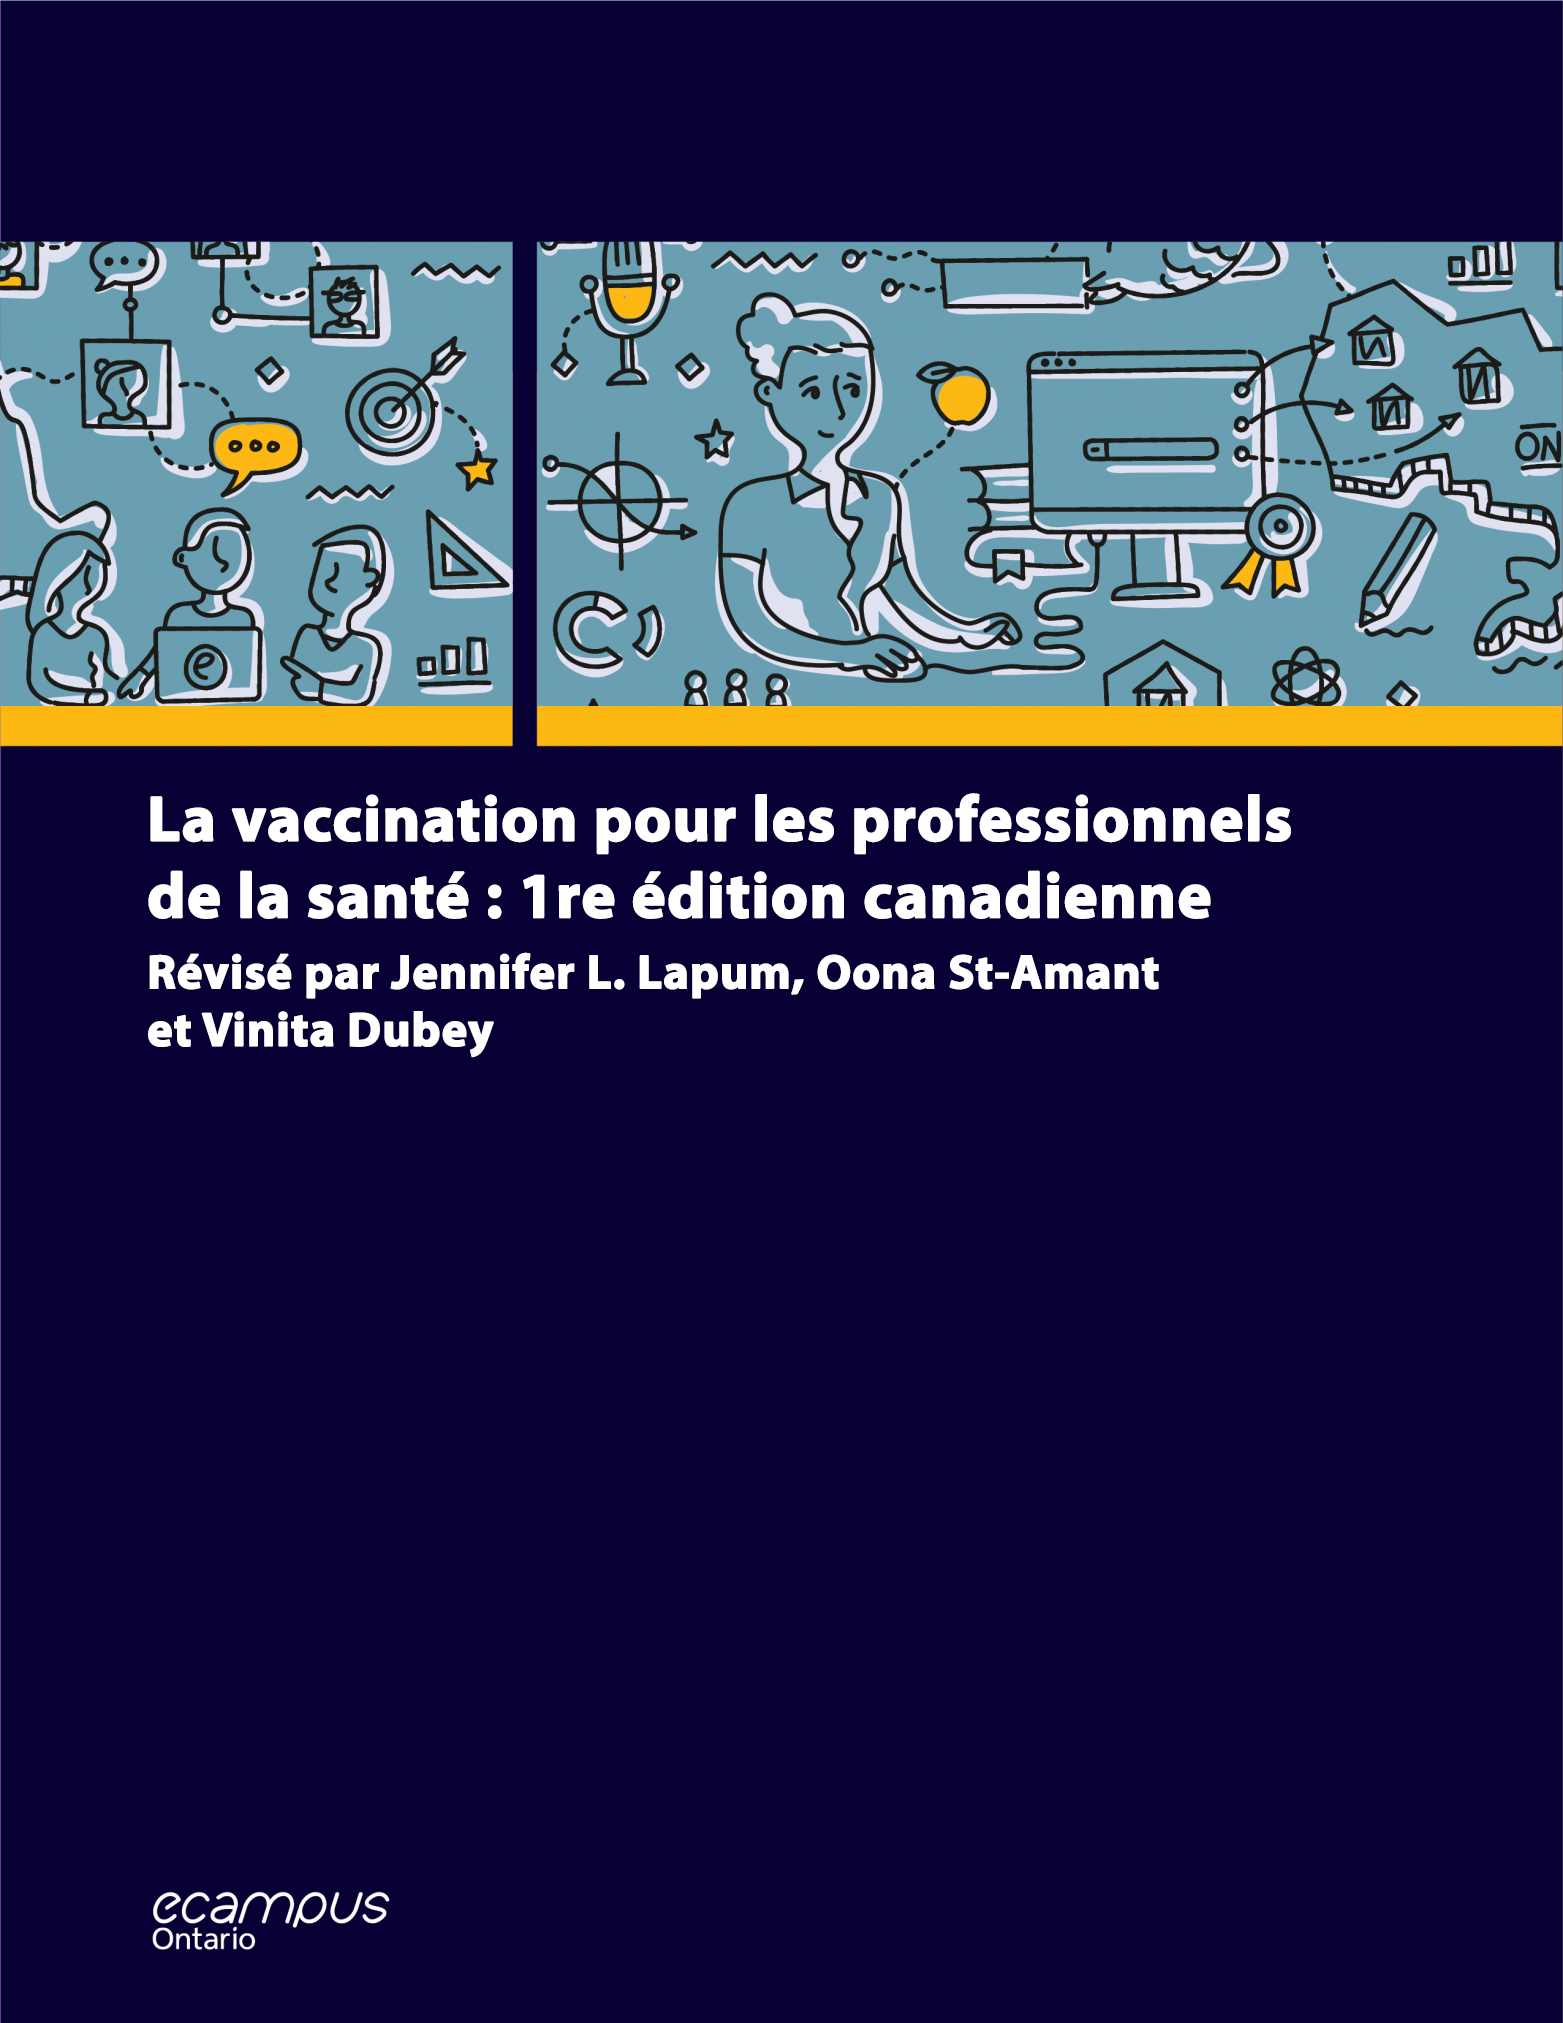 La vaccination pour les professionnels de la santé : 1re édition canadienne